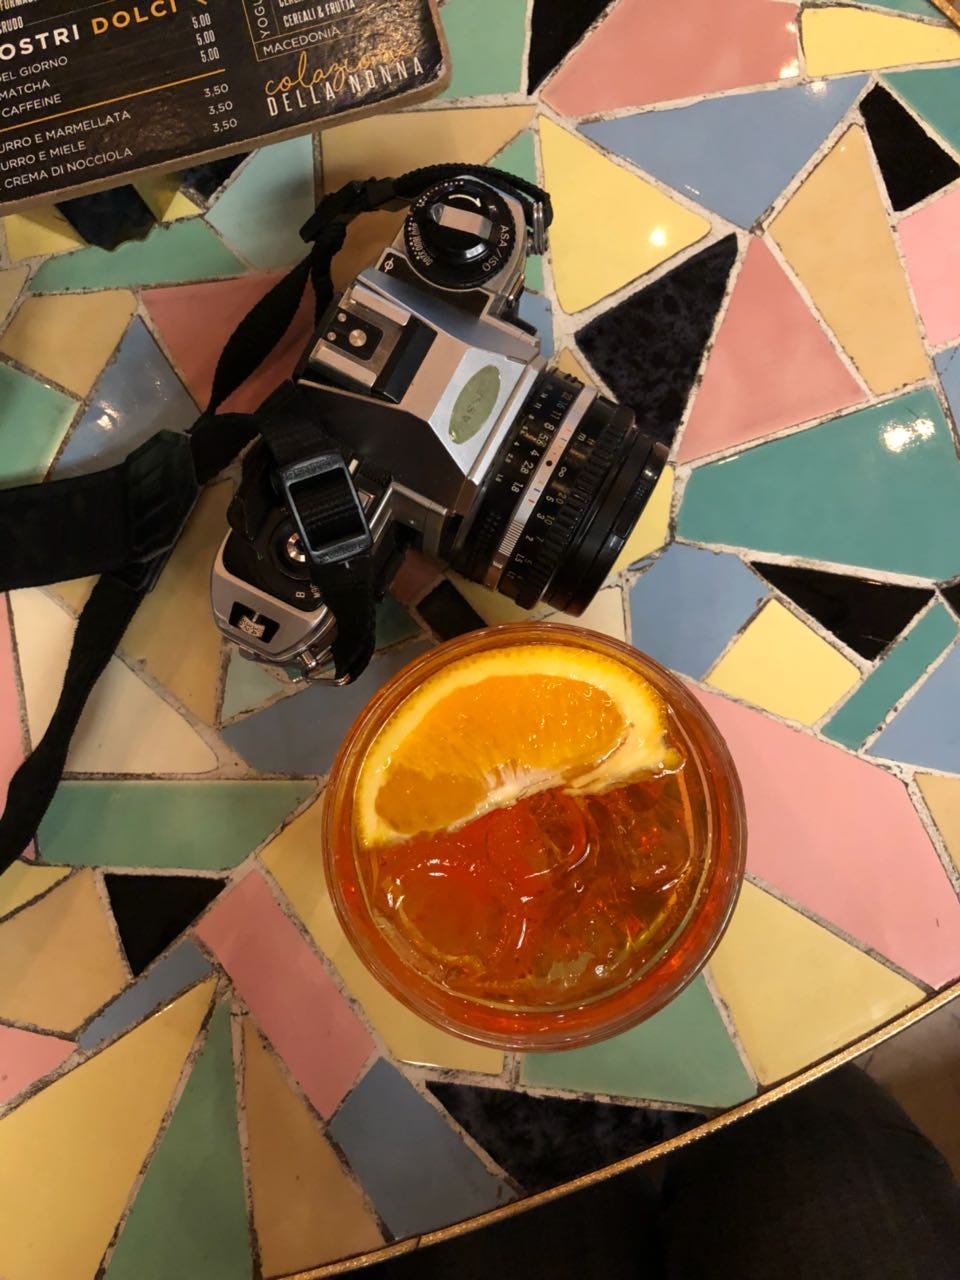 Eine analoge Kamera und ein Glas Aperol Spritz mit einer Orangenscheibe darin sind von oben fotografiert, die Tischplatte besteht aus einem bunten Mosaik.